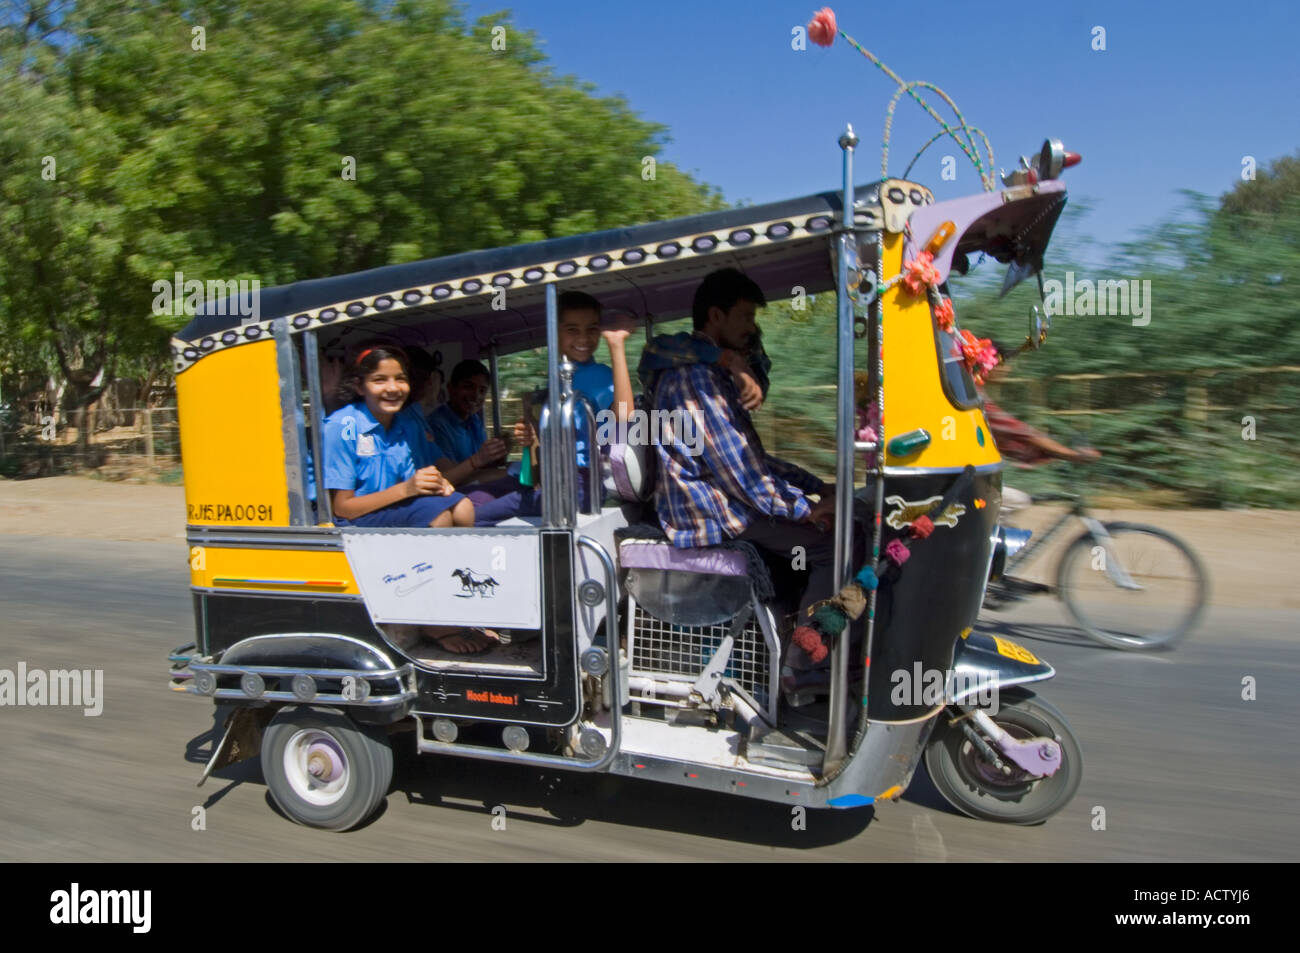 Un décoré de jaune et noir auto rickshaw (tuk tuk) avec les enfants de l'école sourire pris avec vitesse d'obturation lente pour le motion blur. Banque D'Images